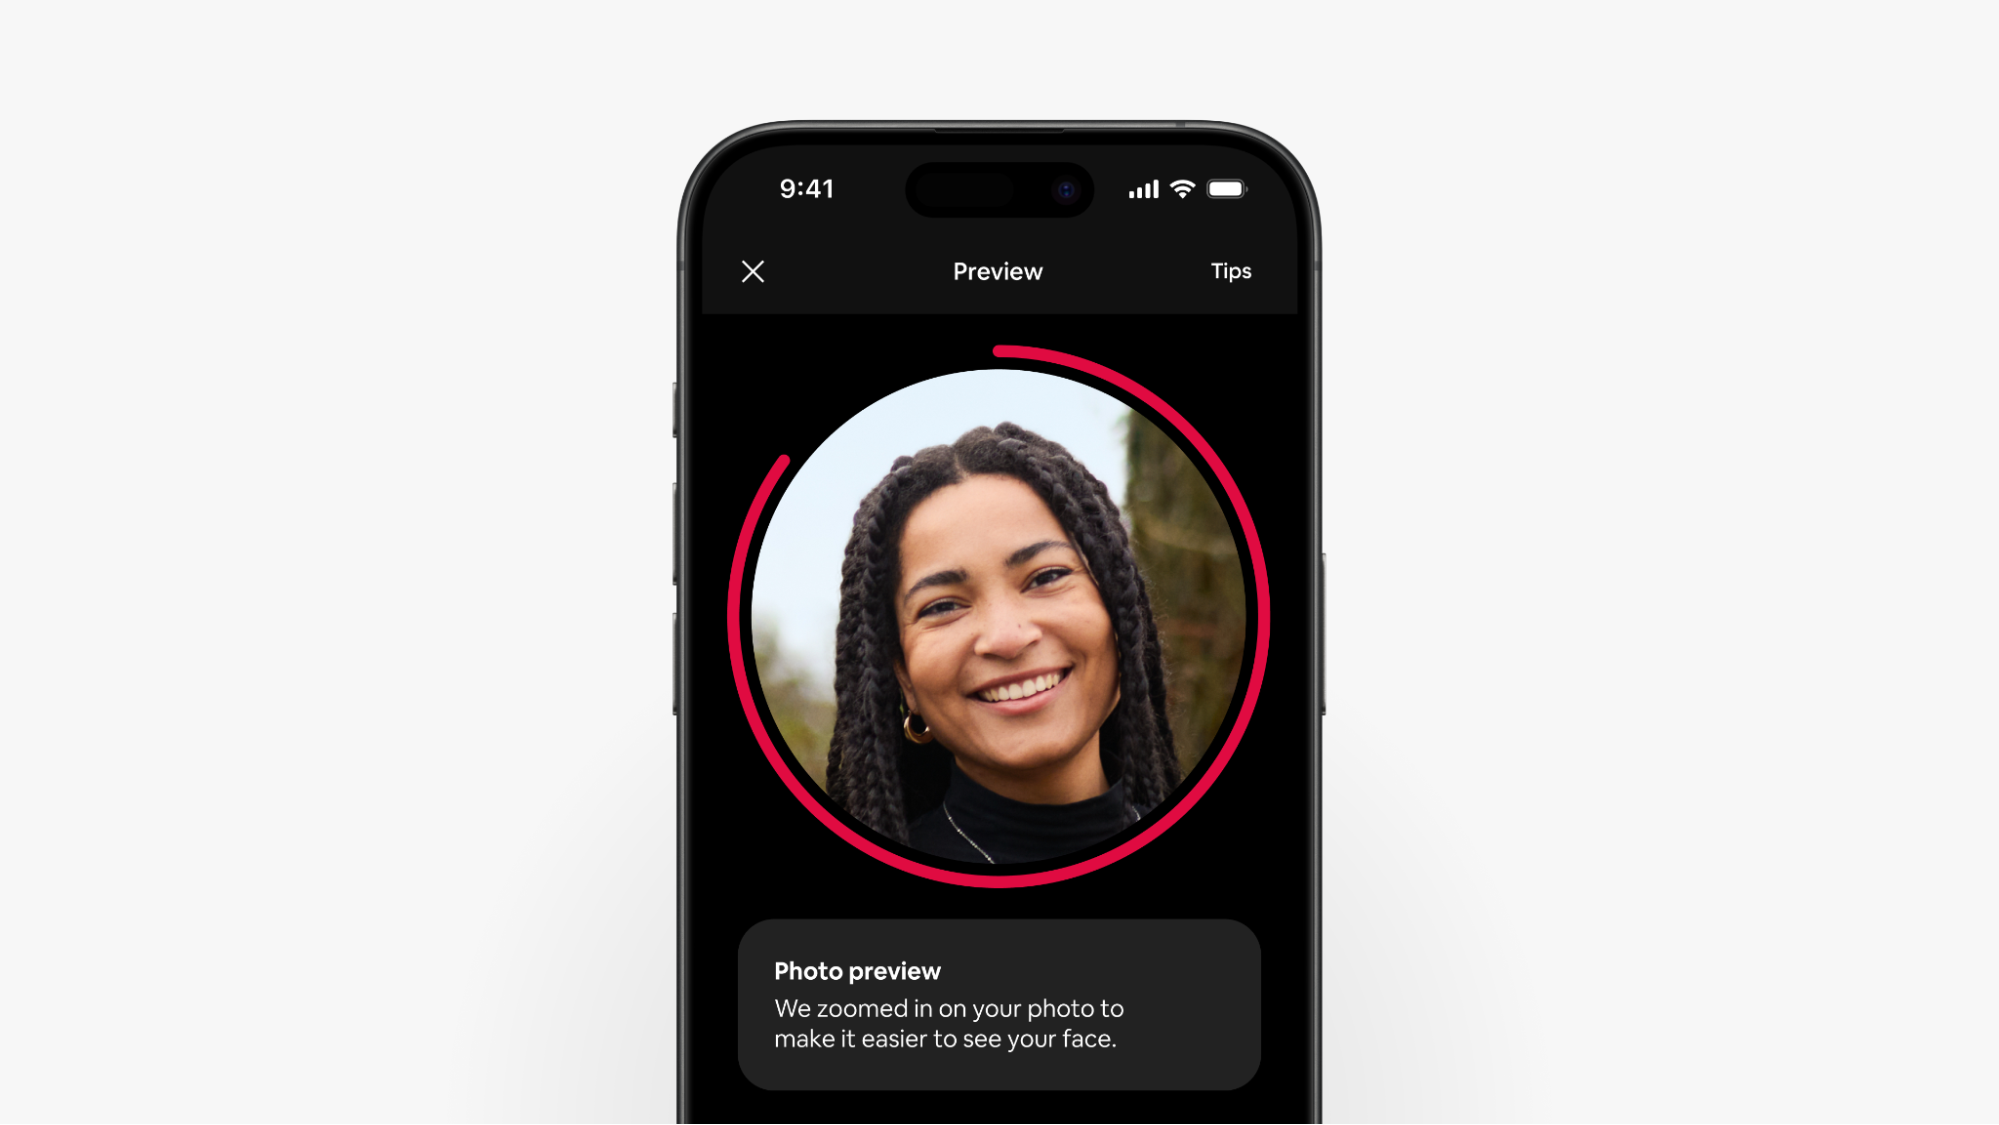 En skärmbild av en smartphone visar den guidade fotograferingen i aktion och zoomar in på en gästs ansikte för ett bättre foto.